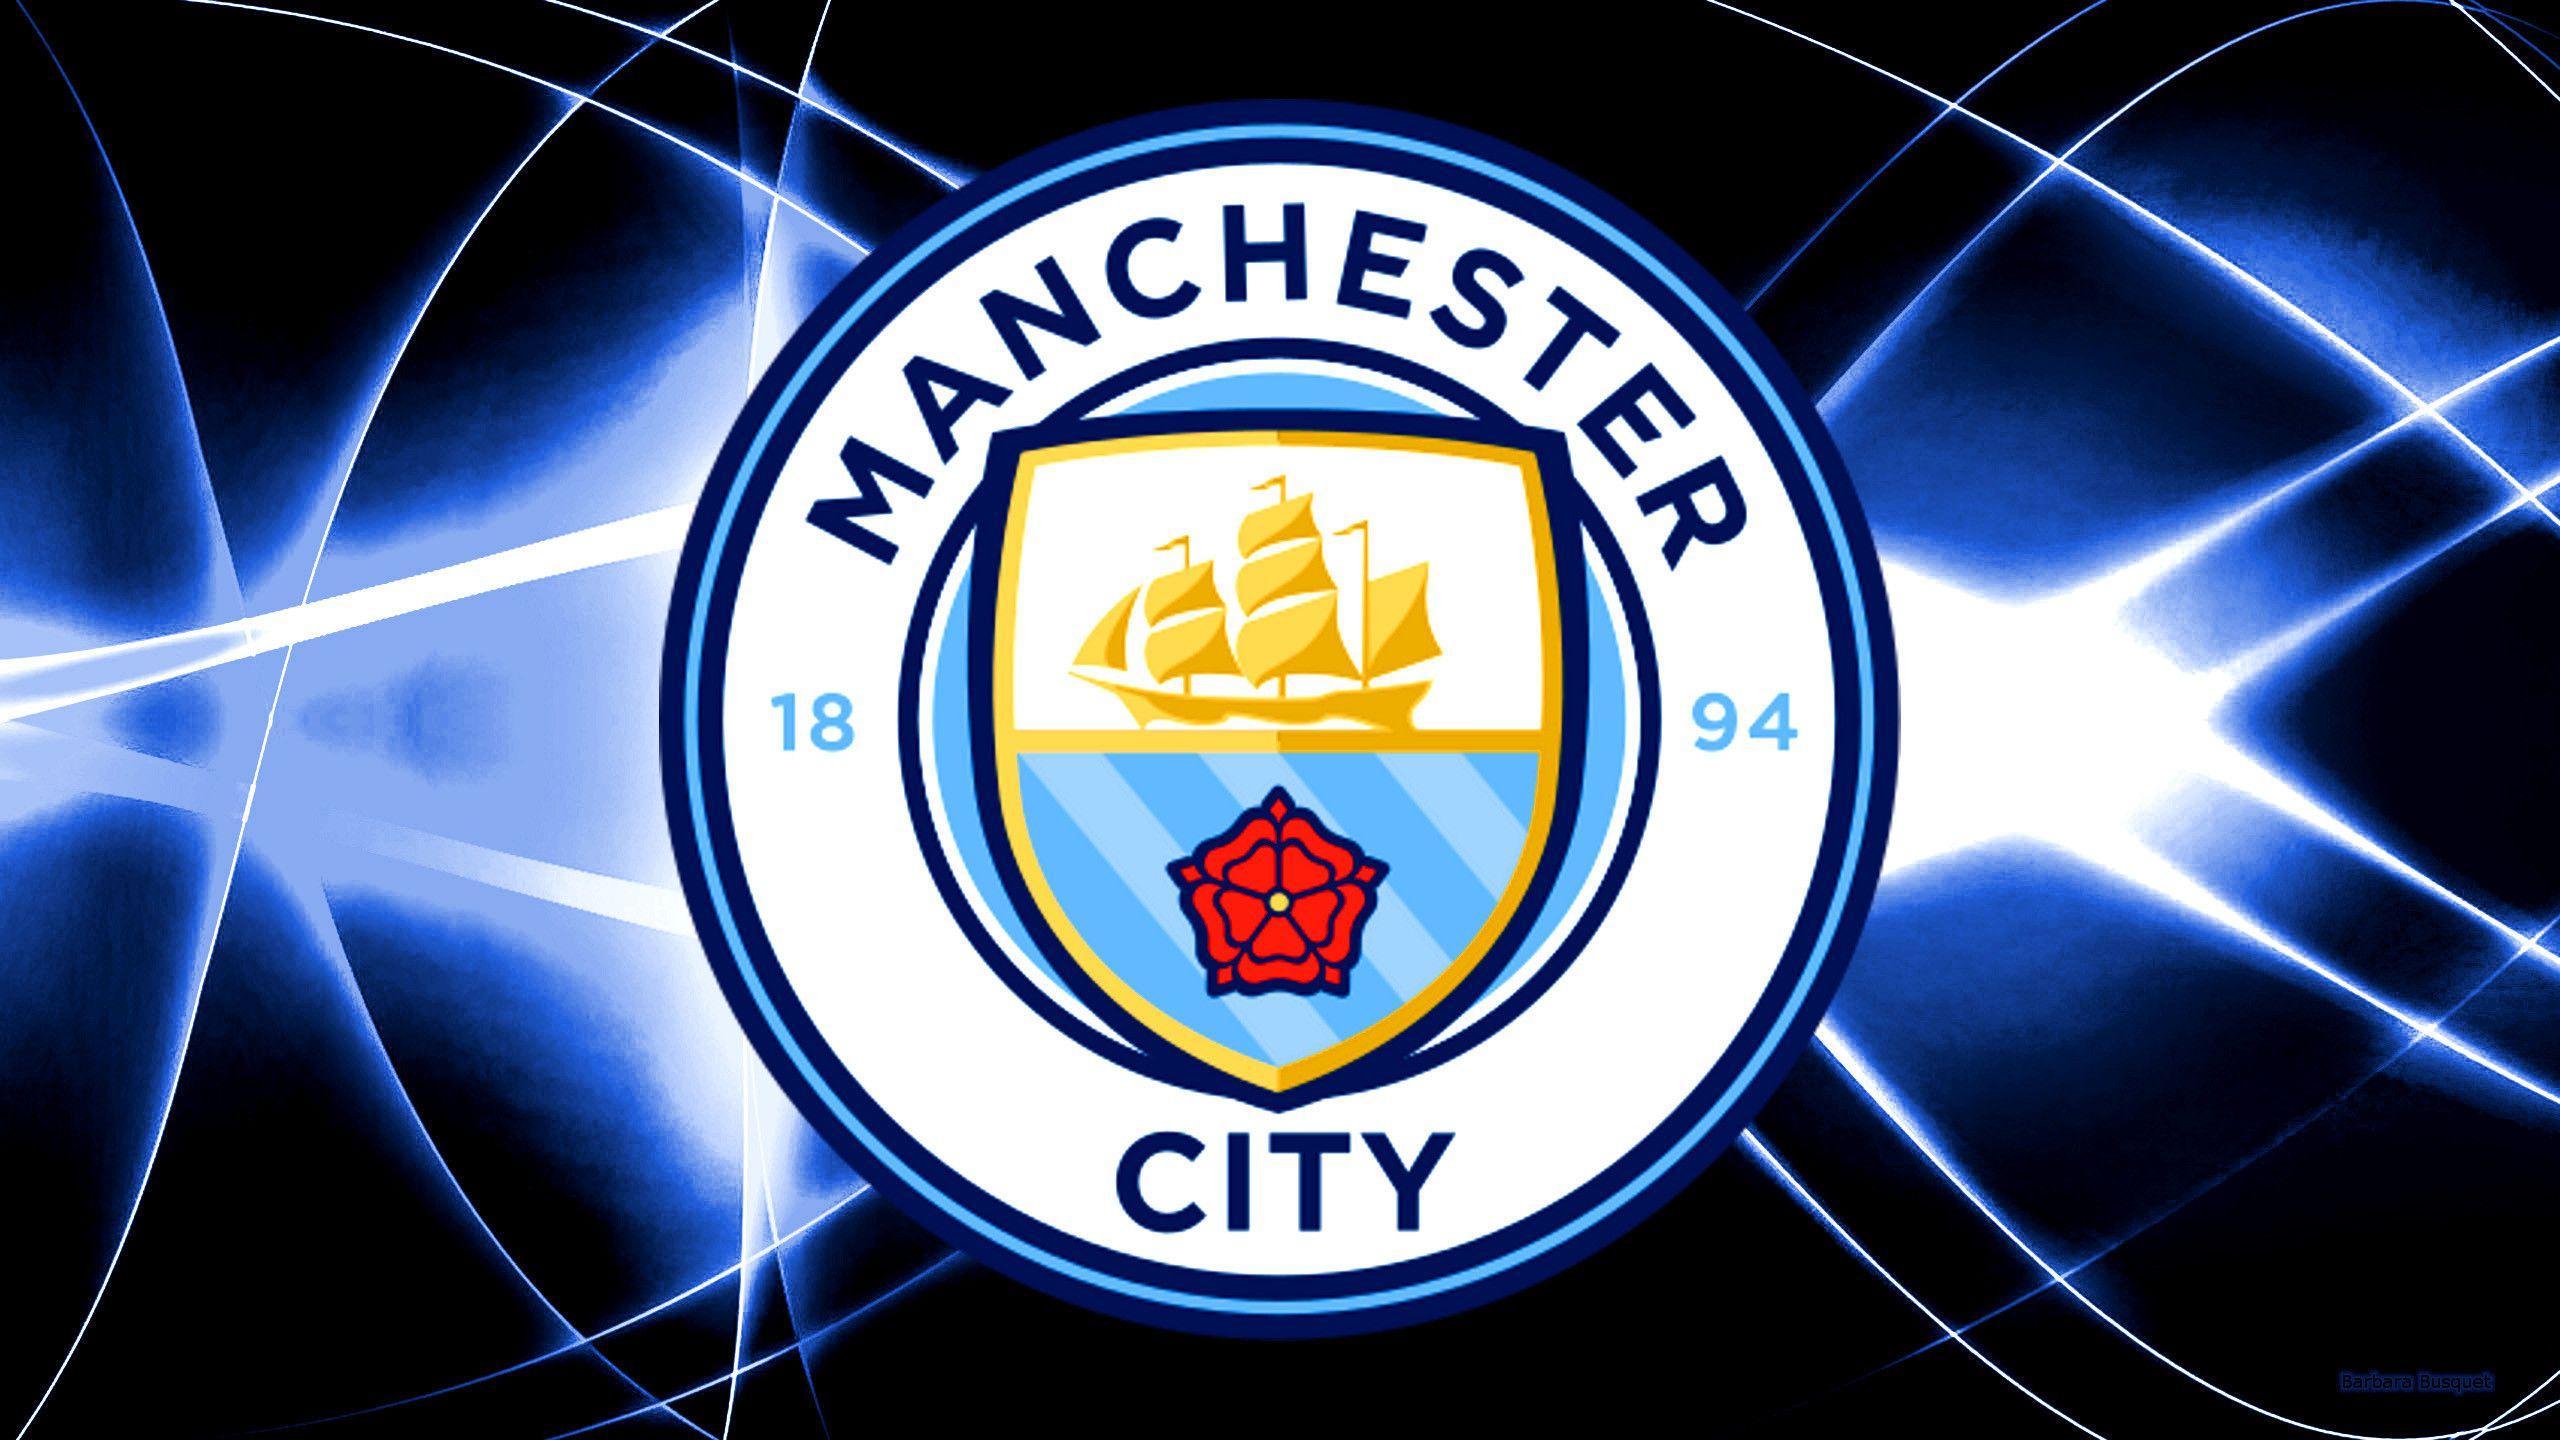 Manchester City Logo - Manchester City Logo Wallpaper ·①